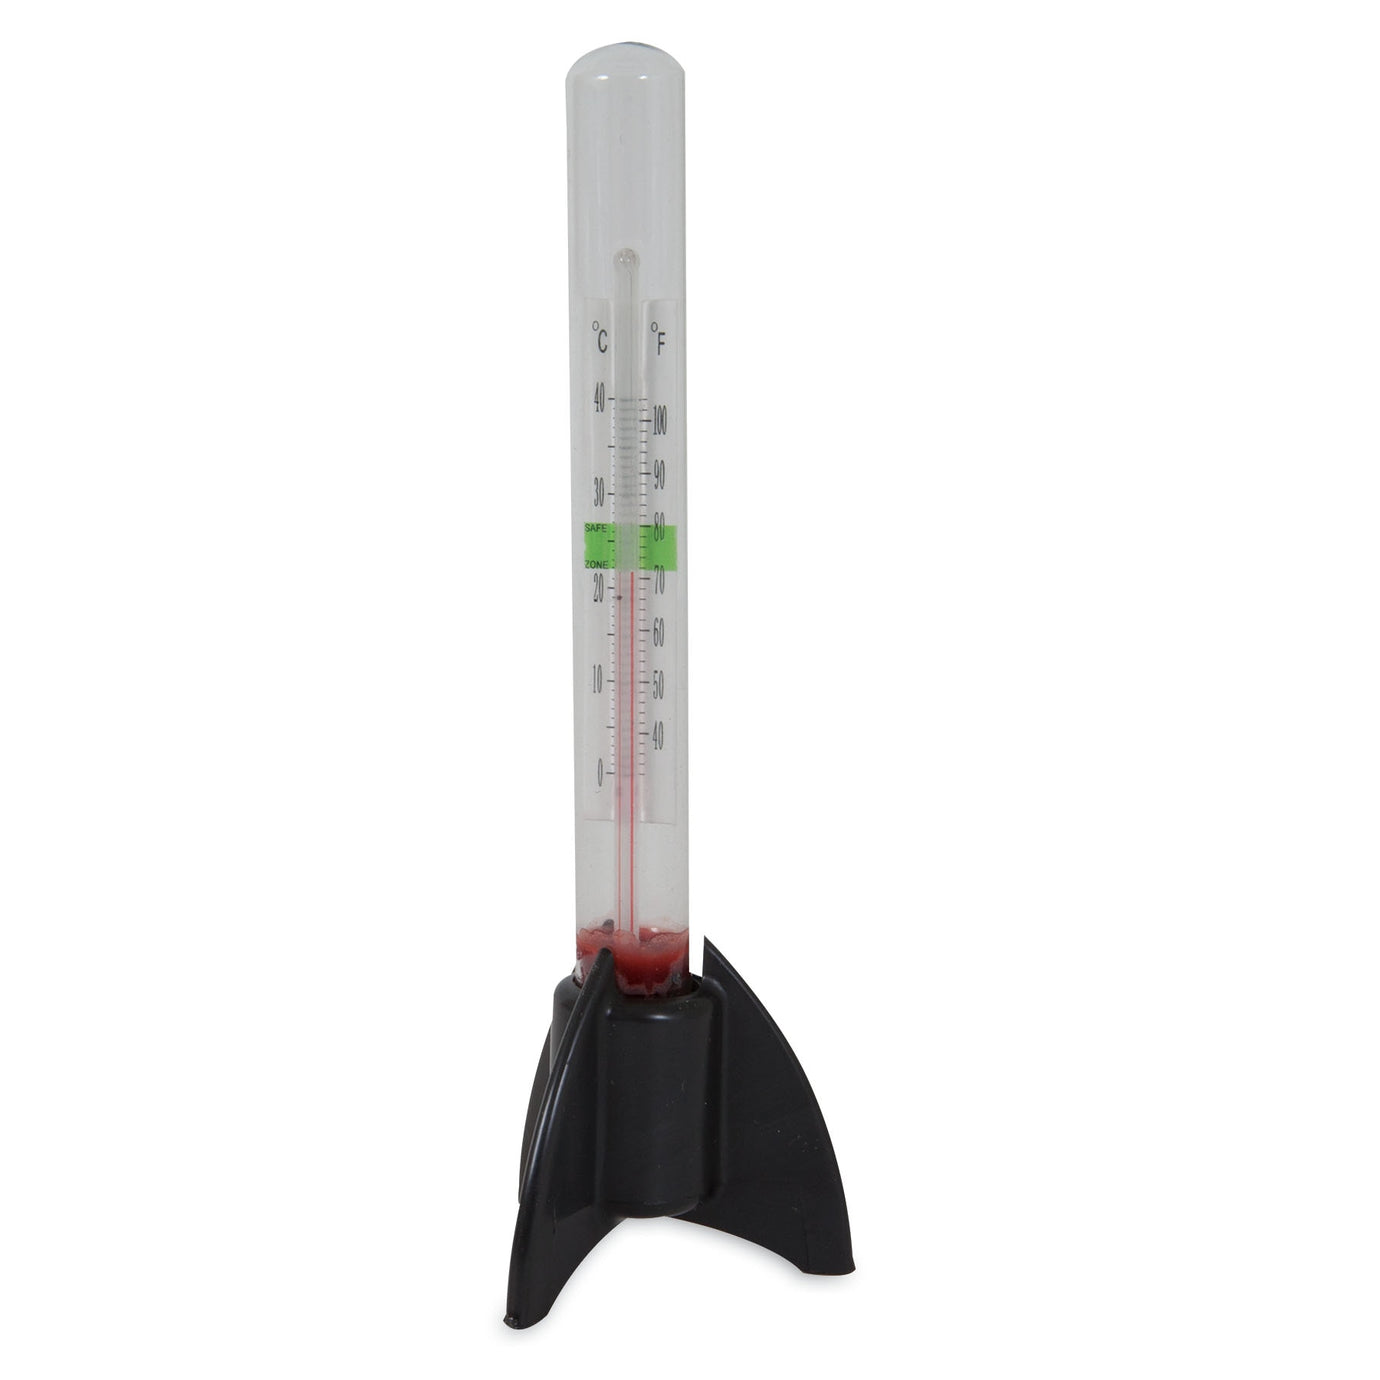 JW Fusion Standing Aquarium Thermometer. SKUS: 0421605